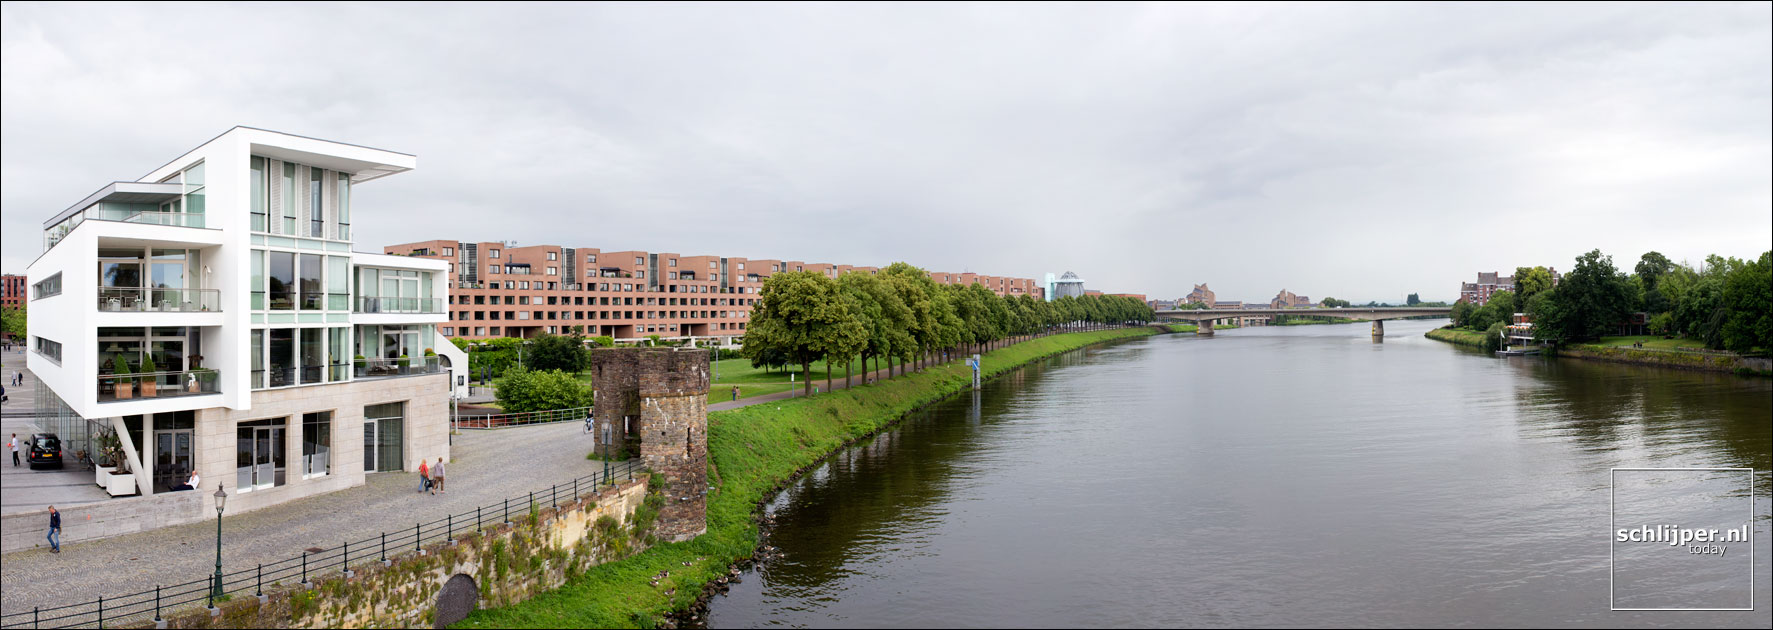 Nederland, Maastricht, 3 juli 2013